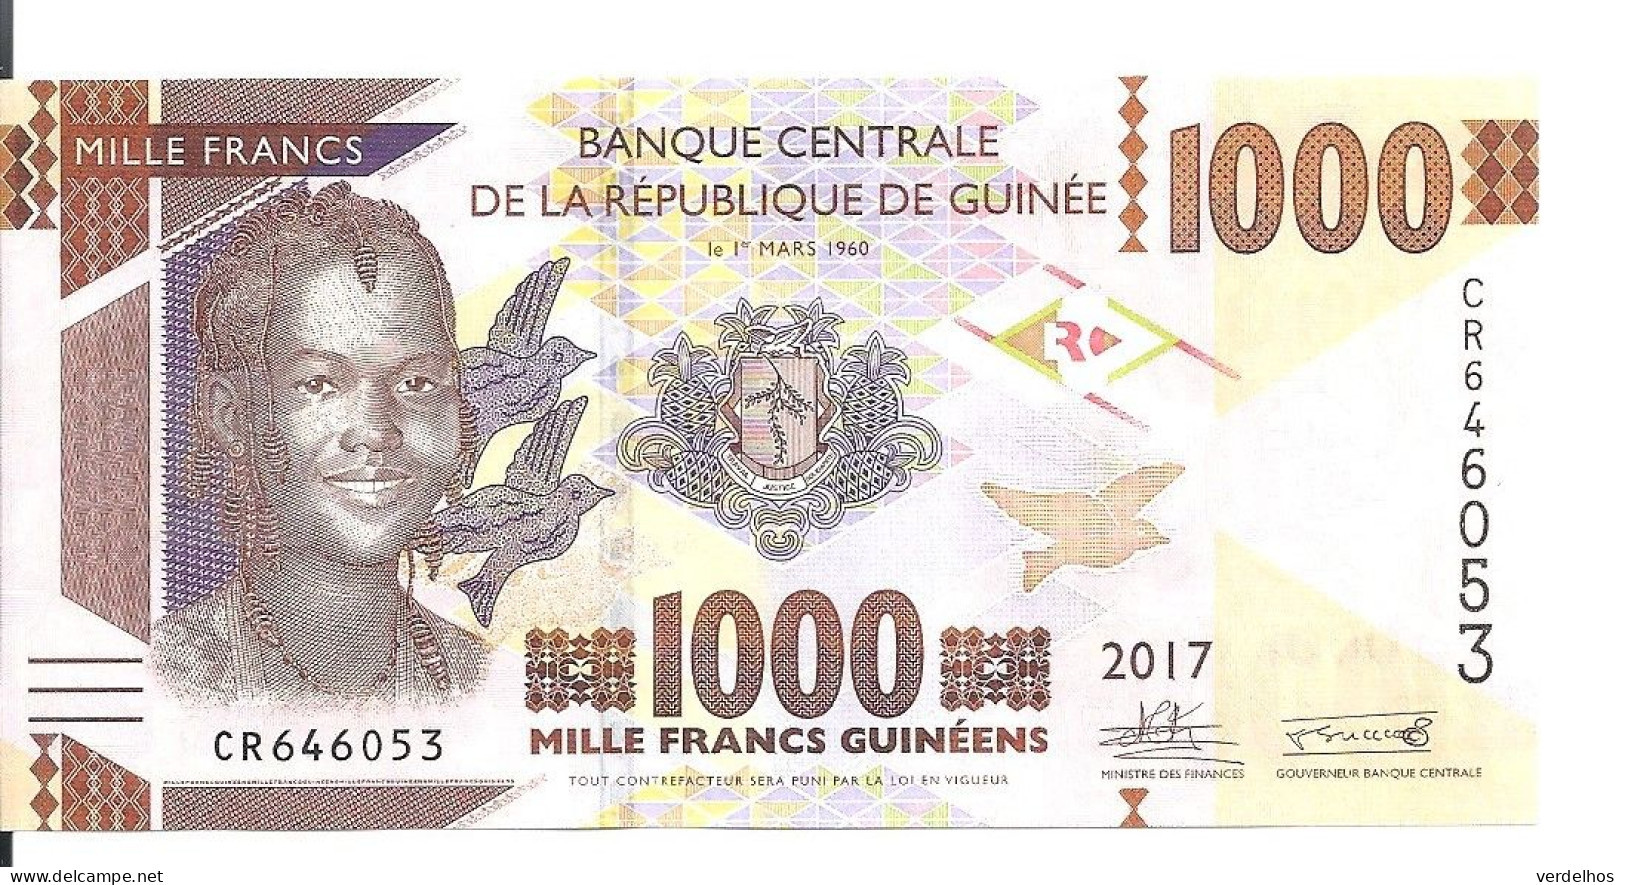 GUINEE 1000 FRANCS 2017 UNC P 48 B - Guinea